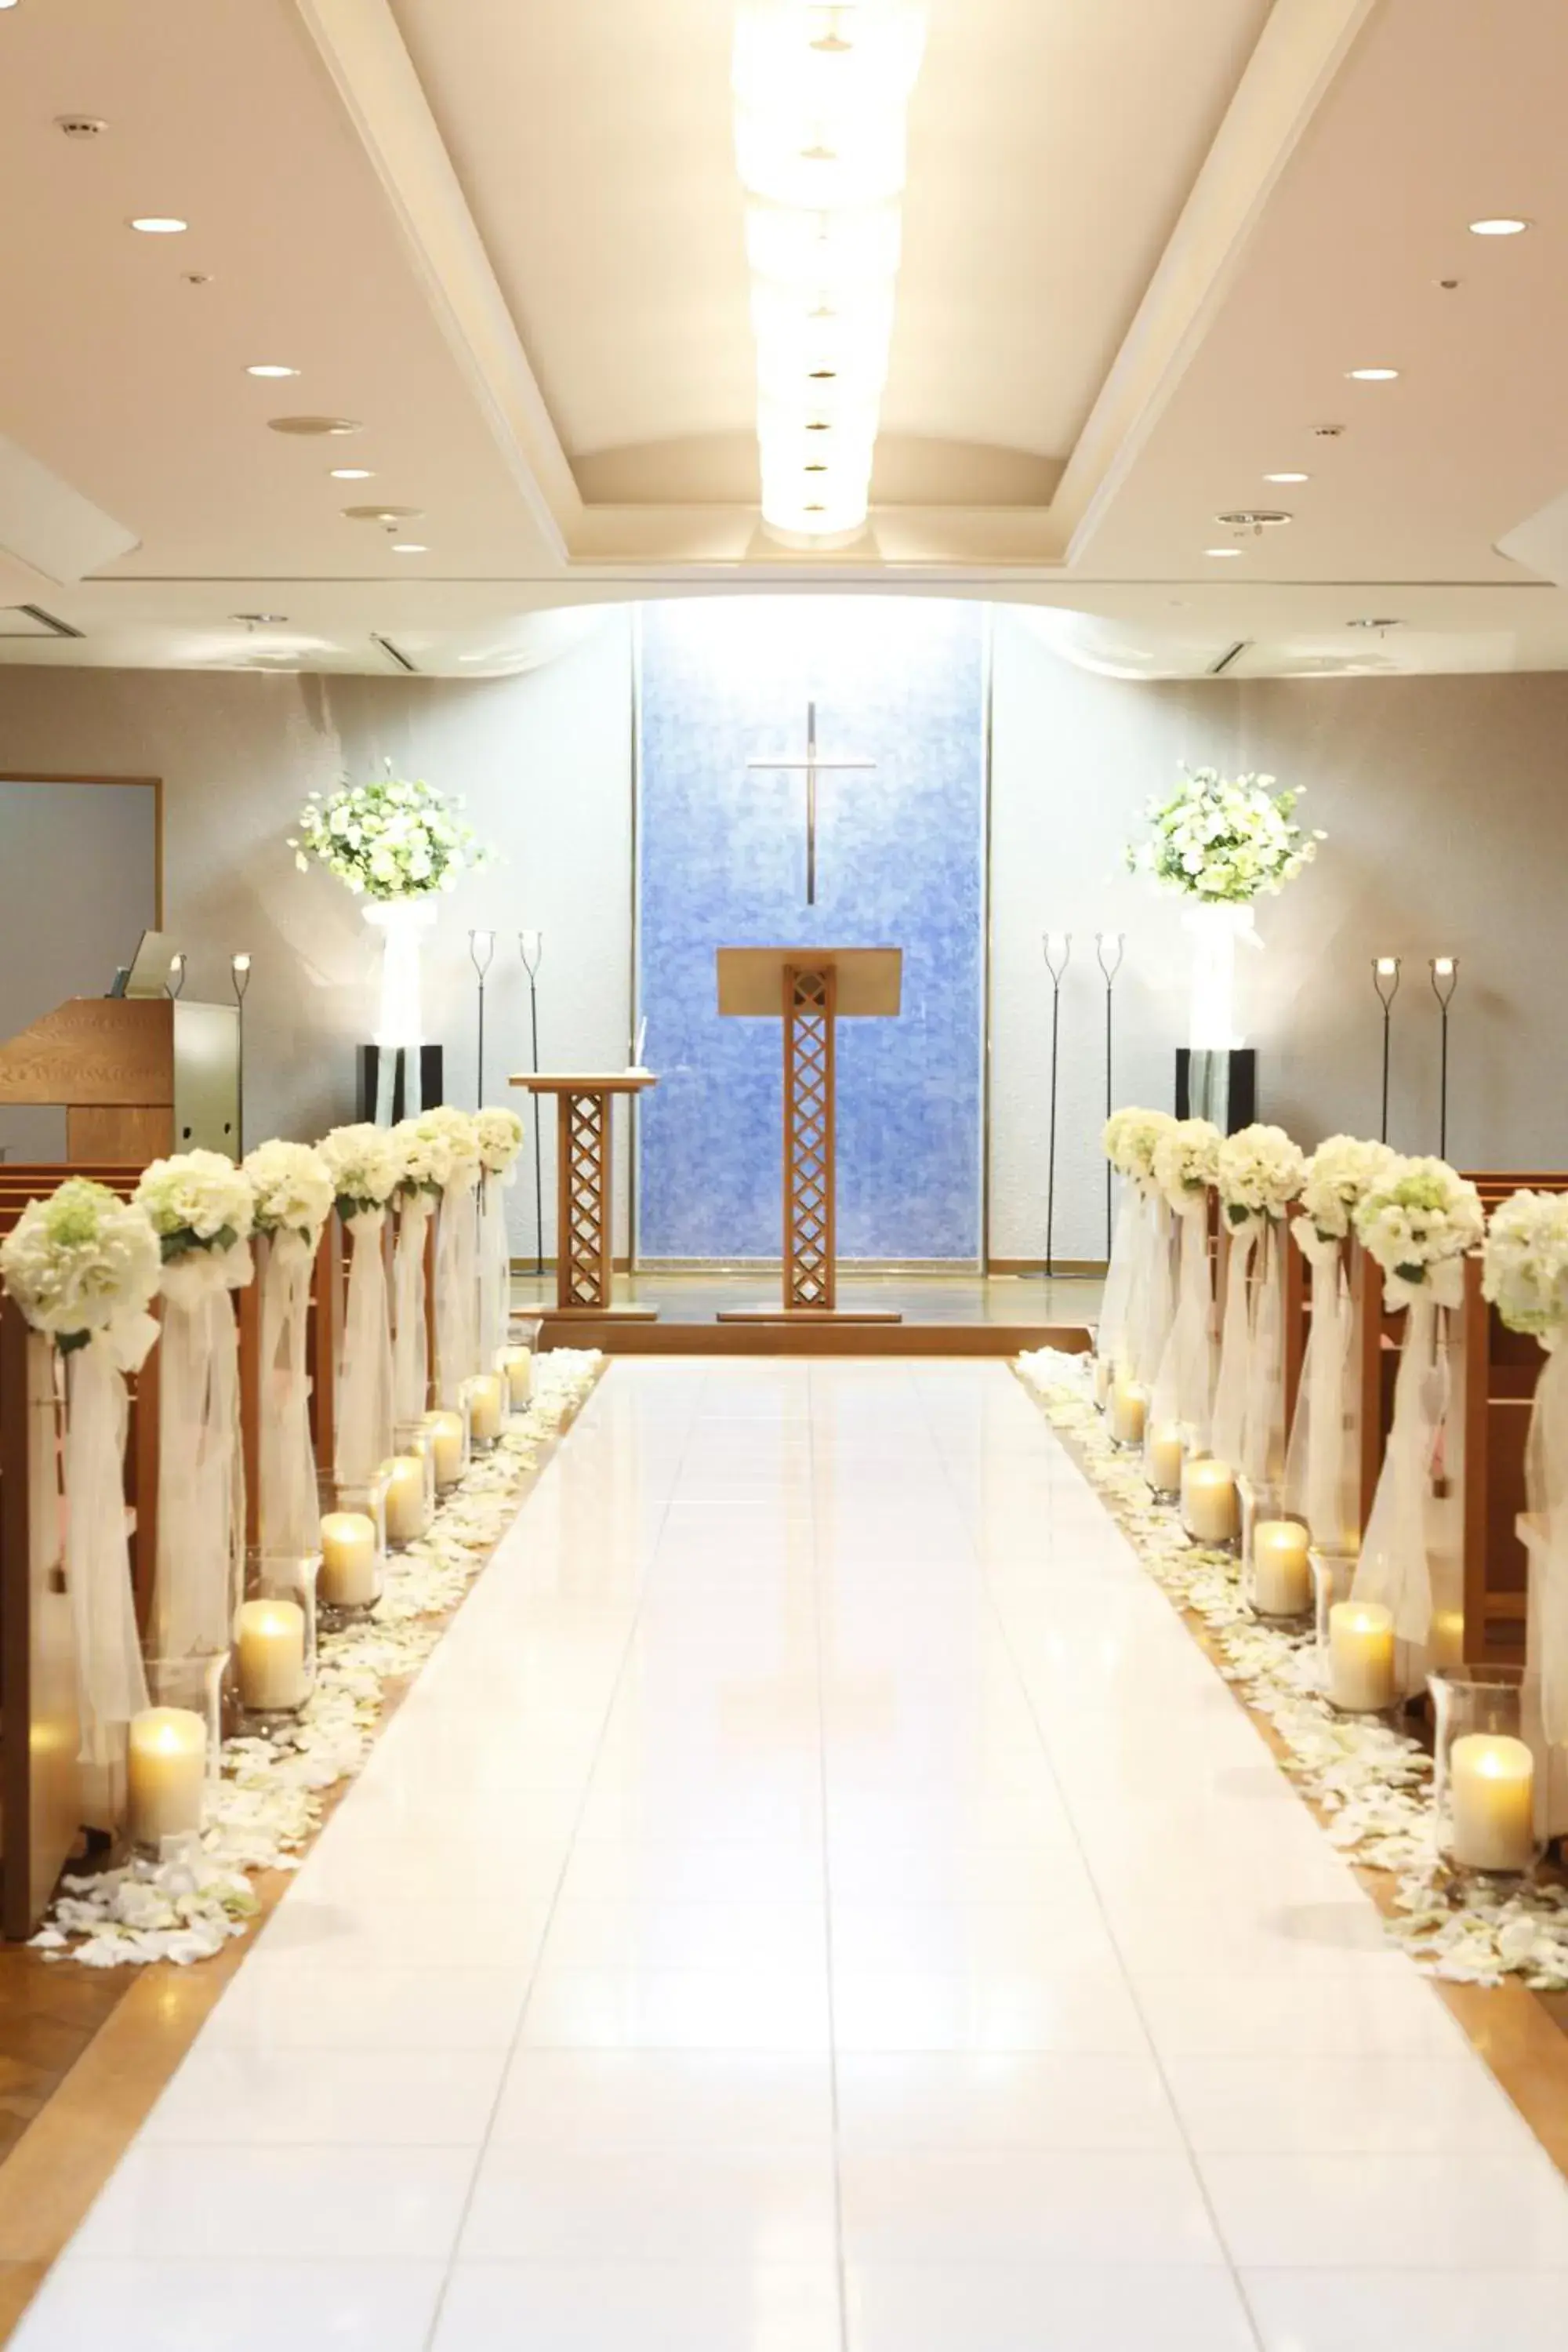 Decorative detail, Banquet Facilities in Hotel Awina Osaka